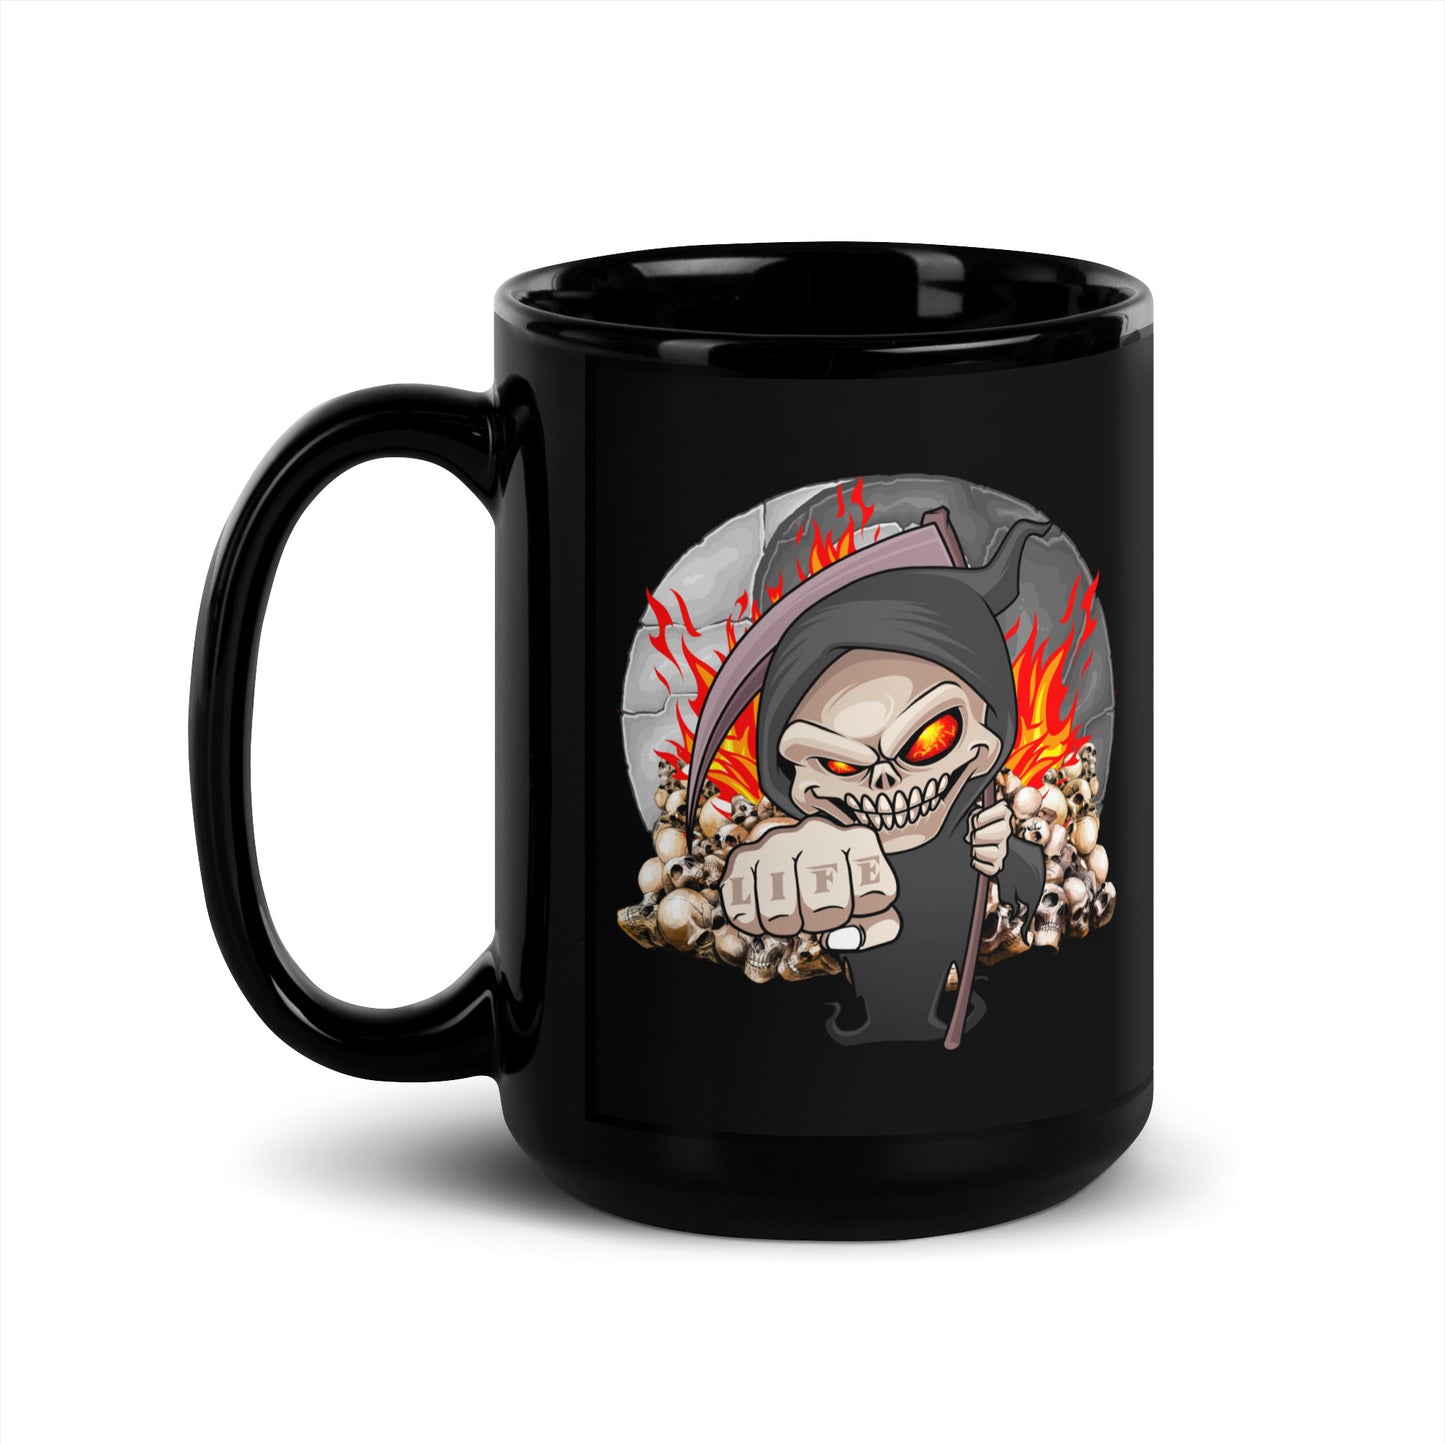 Reaper Motorcycle Coffee Mug